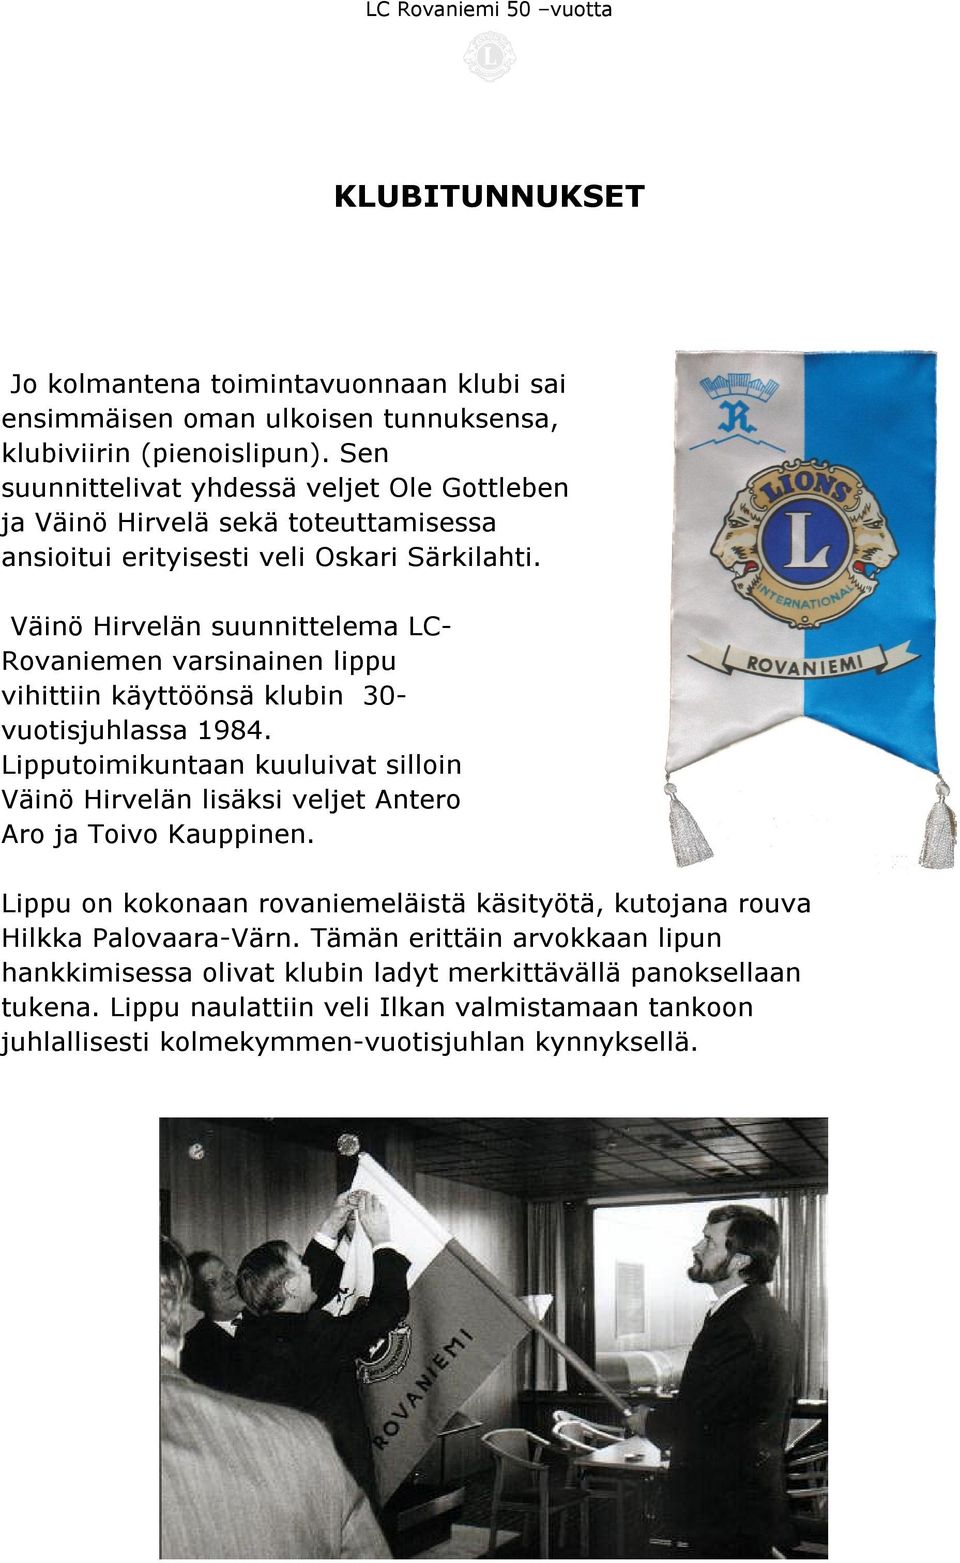 Väinö Hirvelän suunnittelema LC- Rovaniemen varsinainen lippu vihittiin käyttöönsä klubin 30- vuotisjuhlassa 1984.